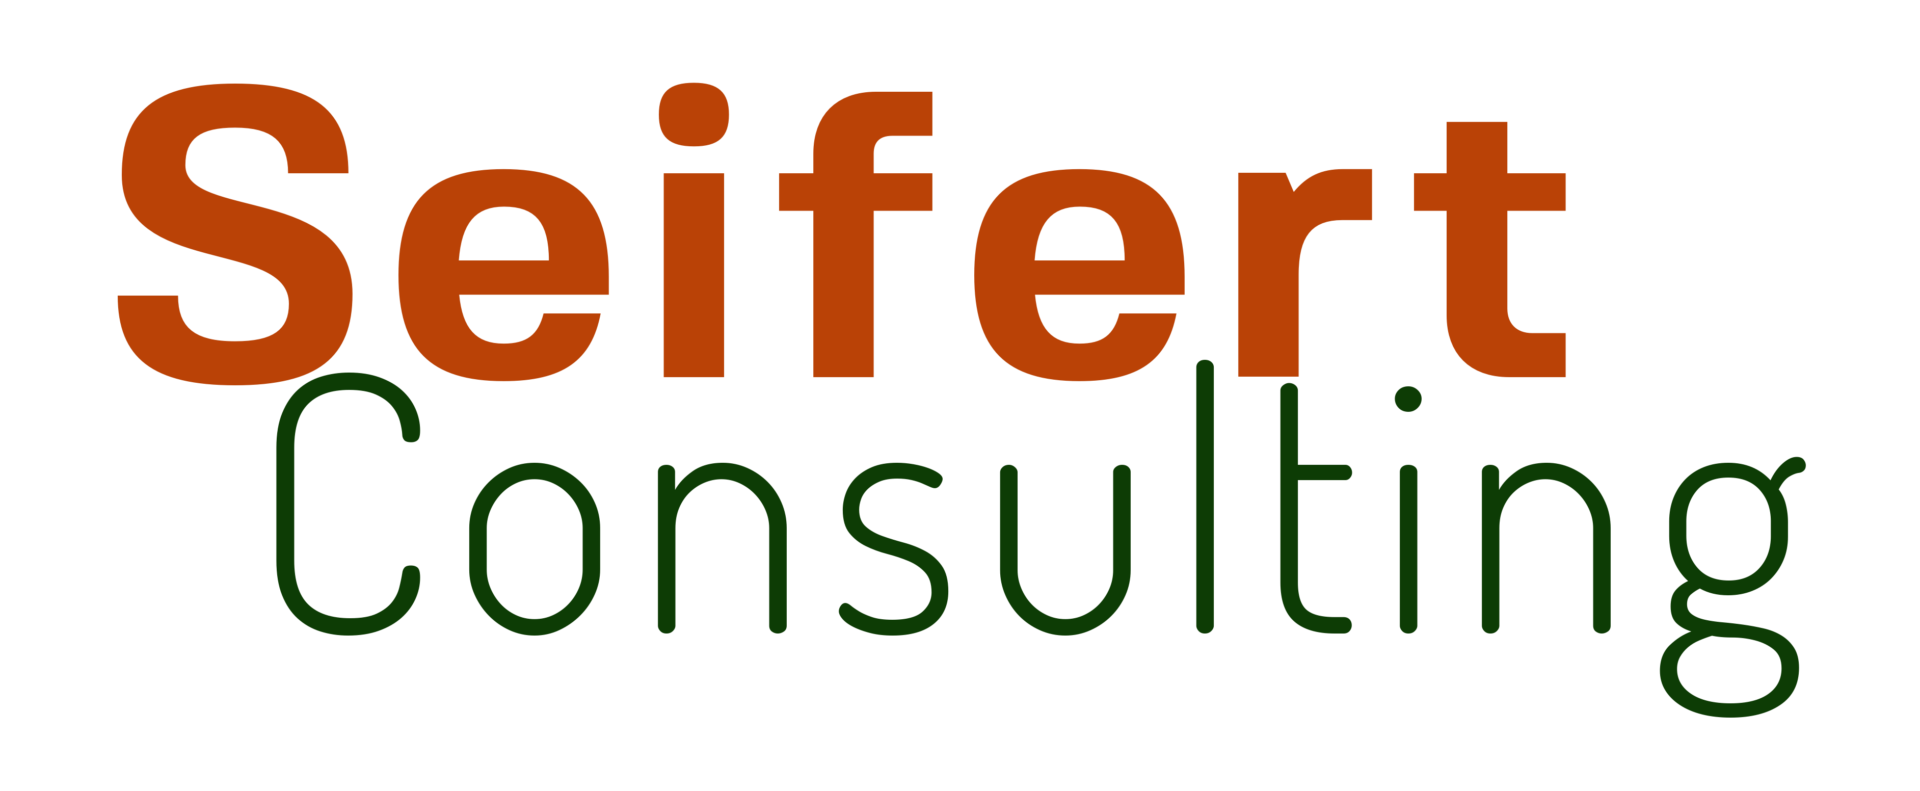 Seifert Consulting